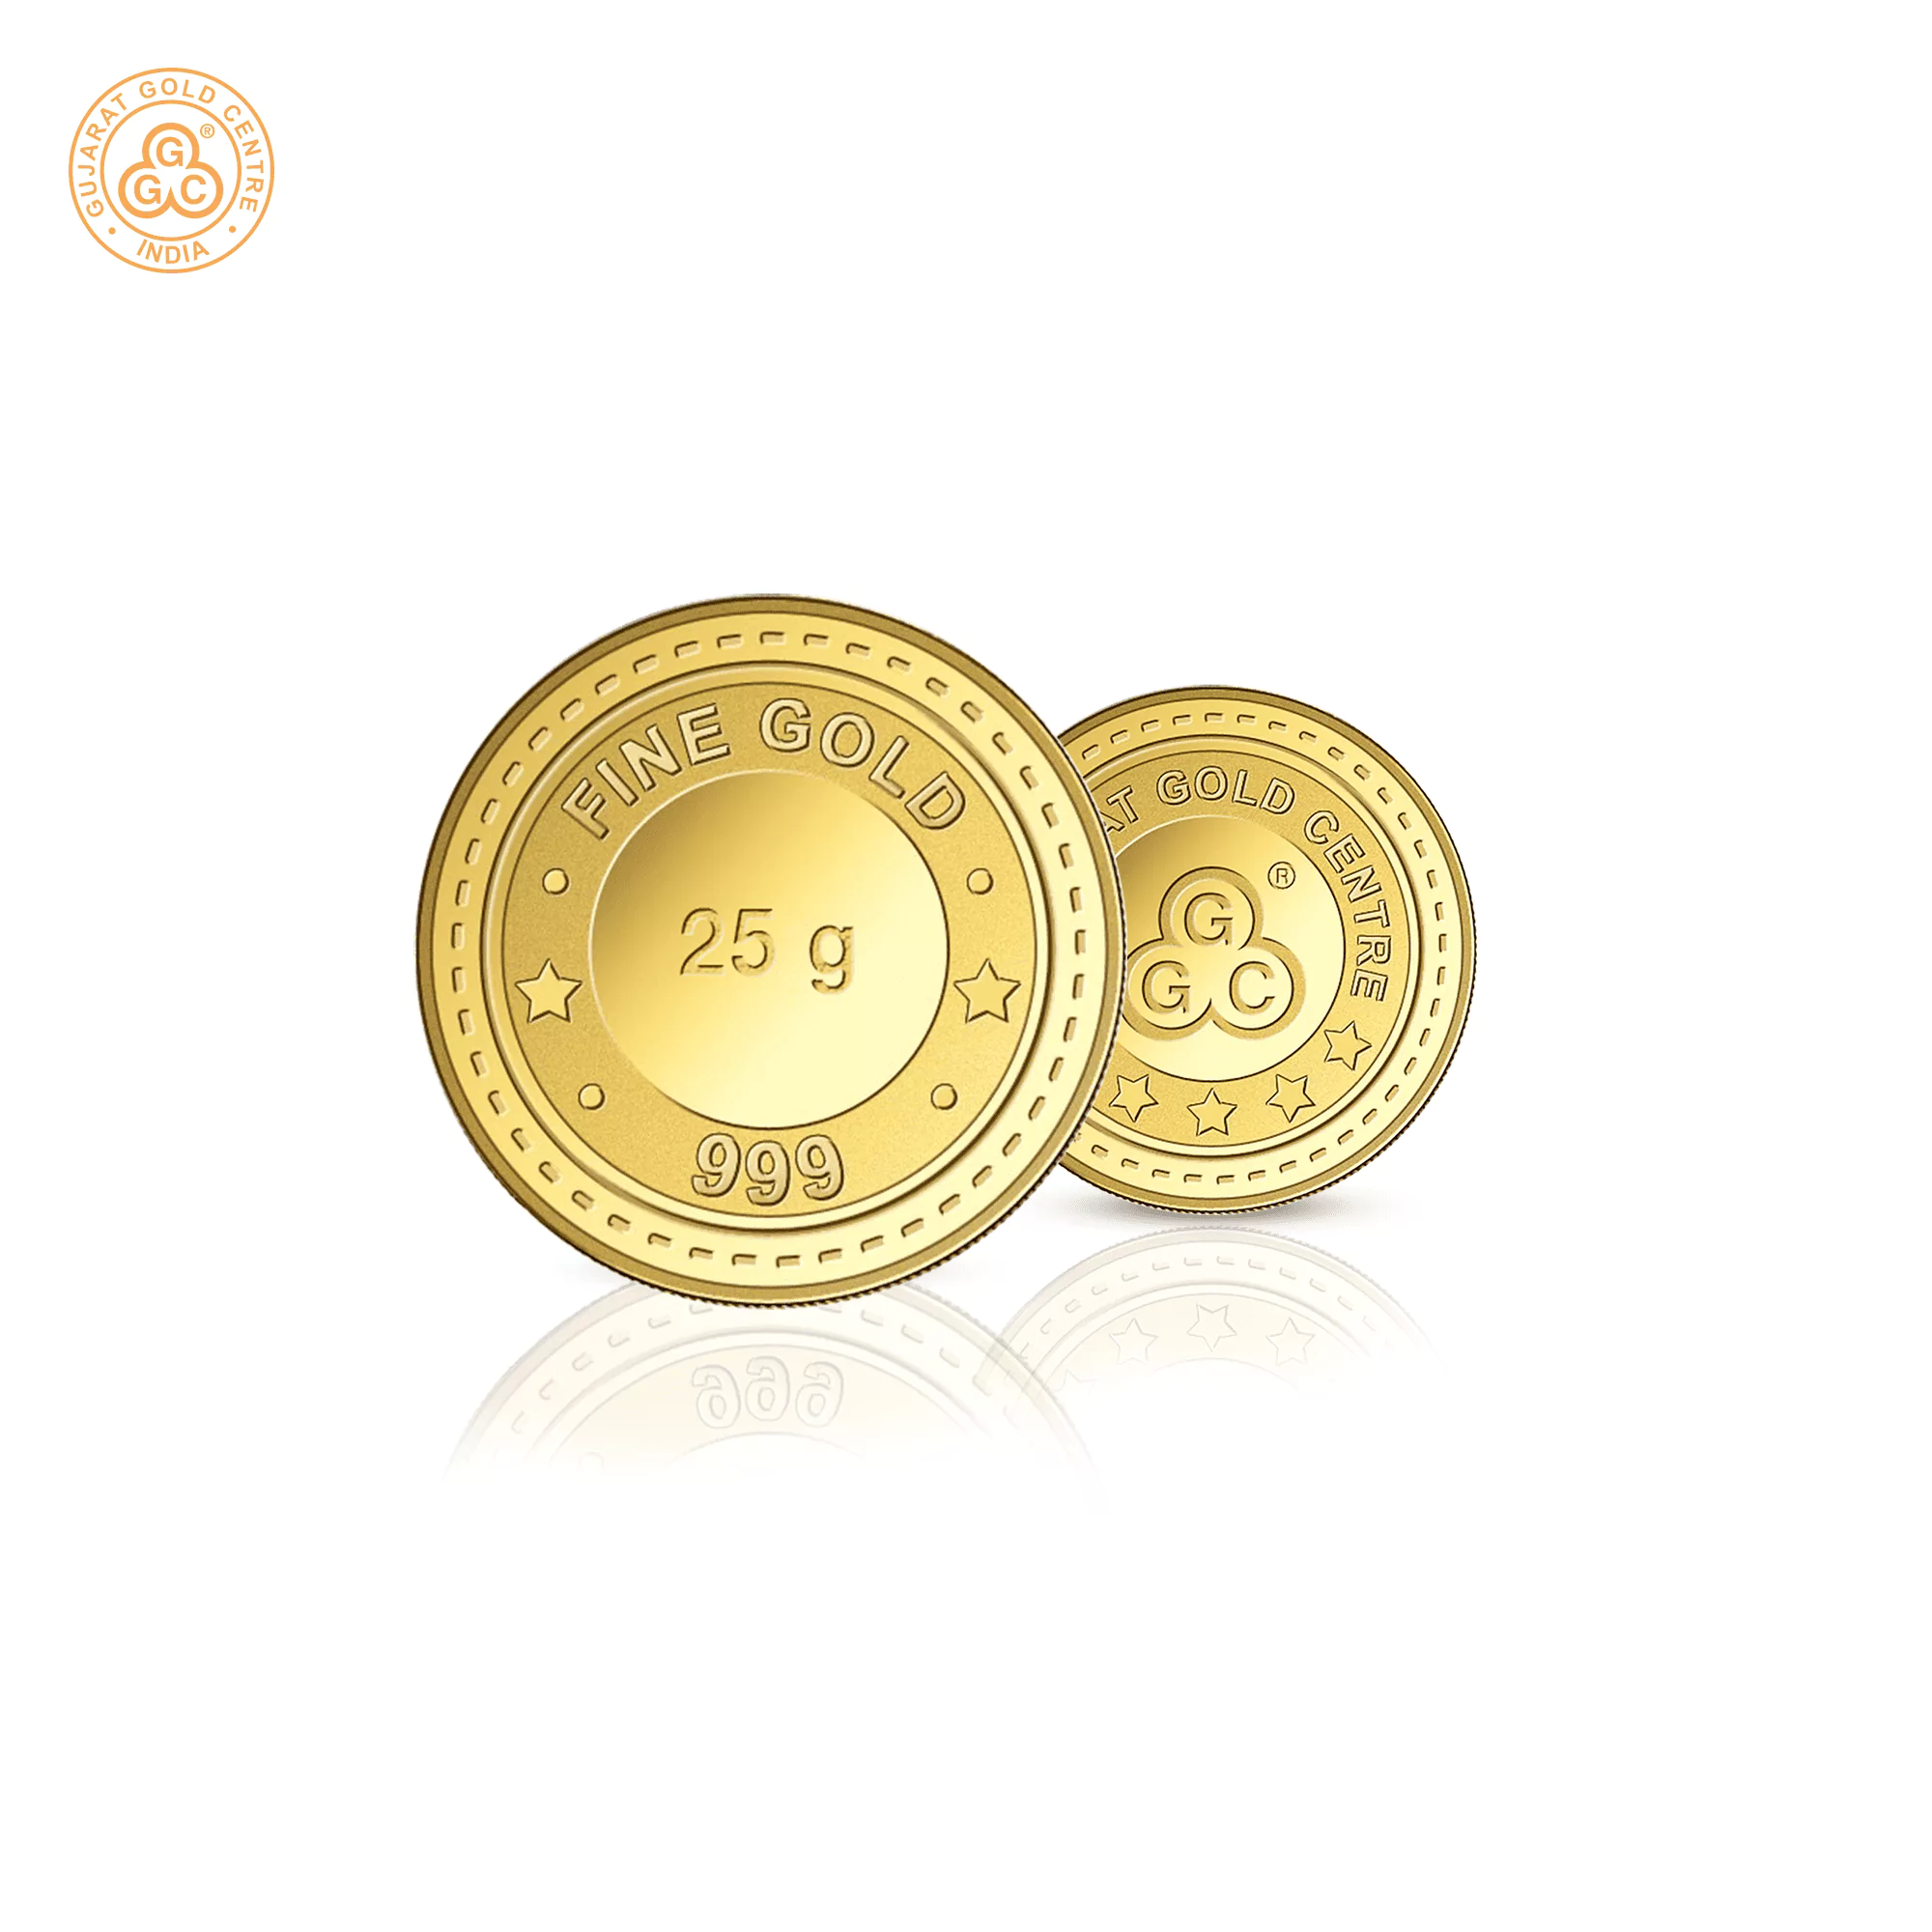 25gm GGC 24K Gold Coin